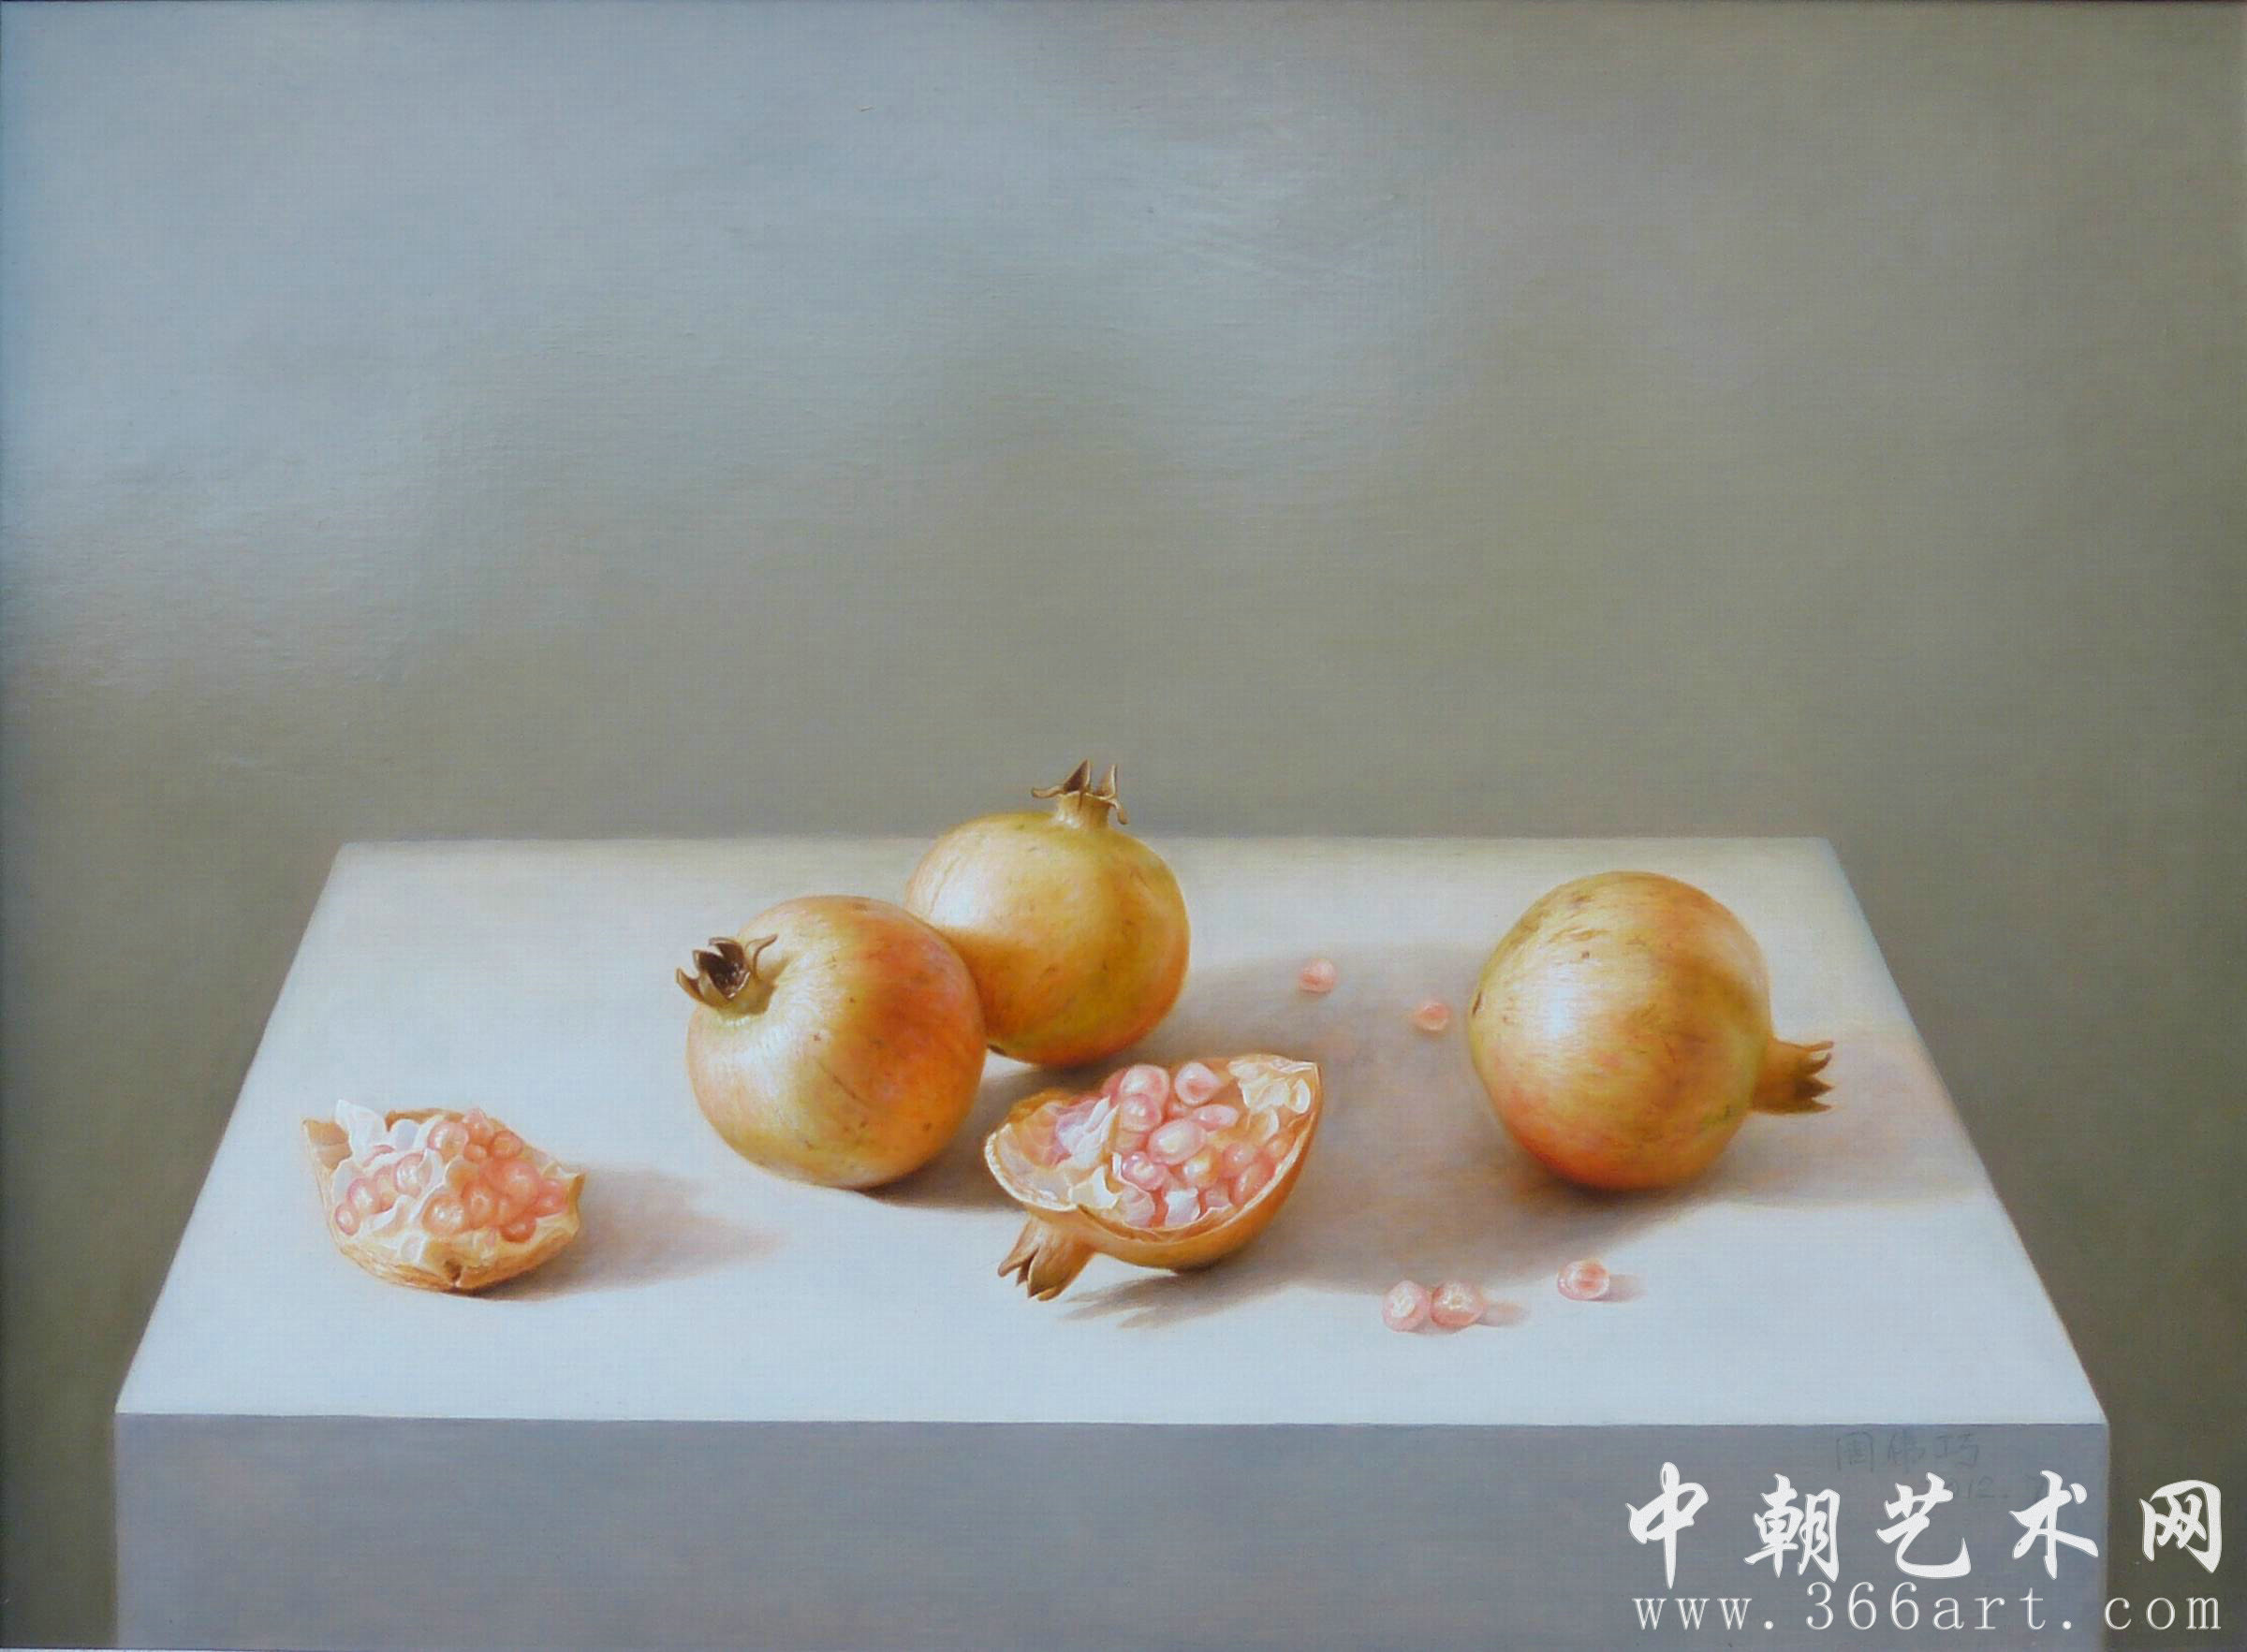 【中国油画】周伟巧 静物之石榴 2012年7月 79 x 59cm